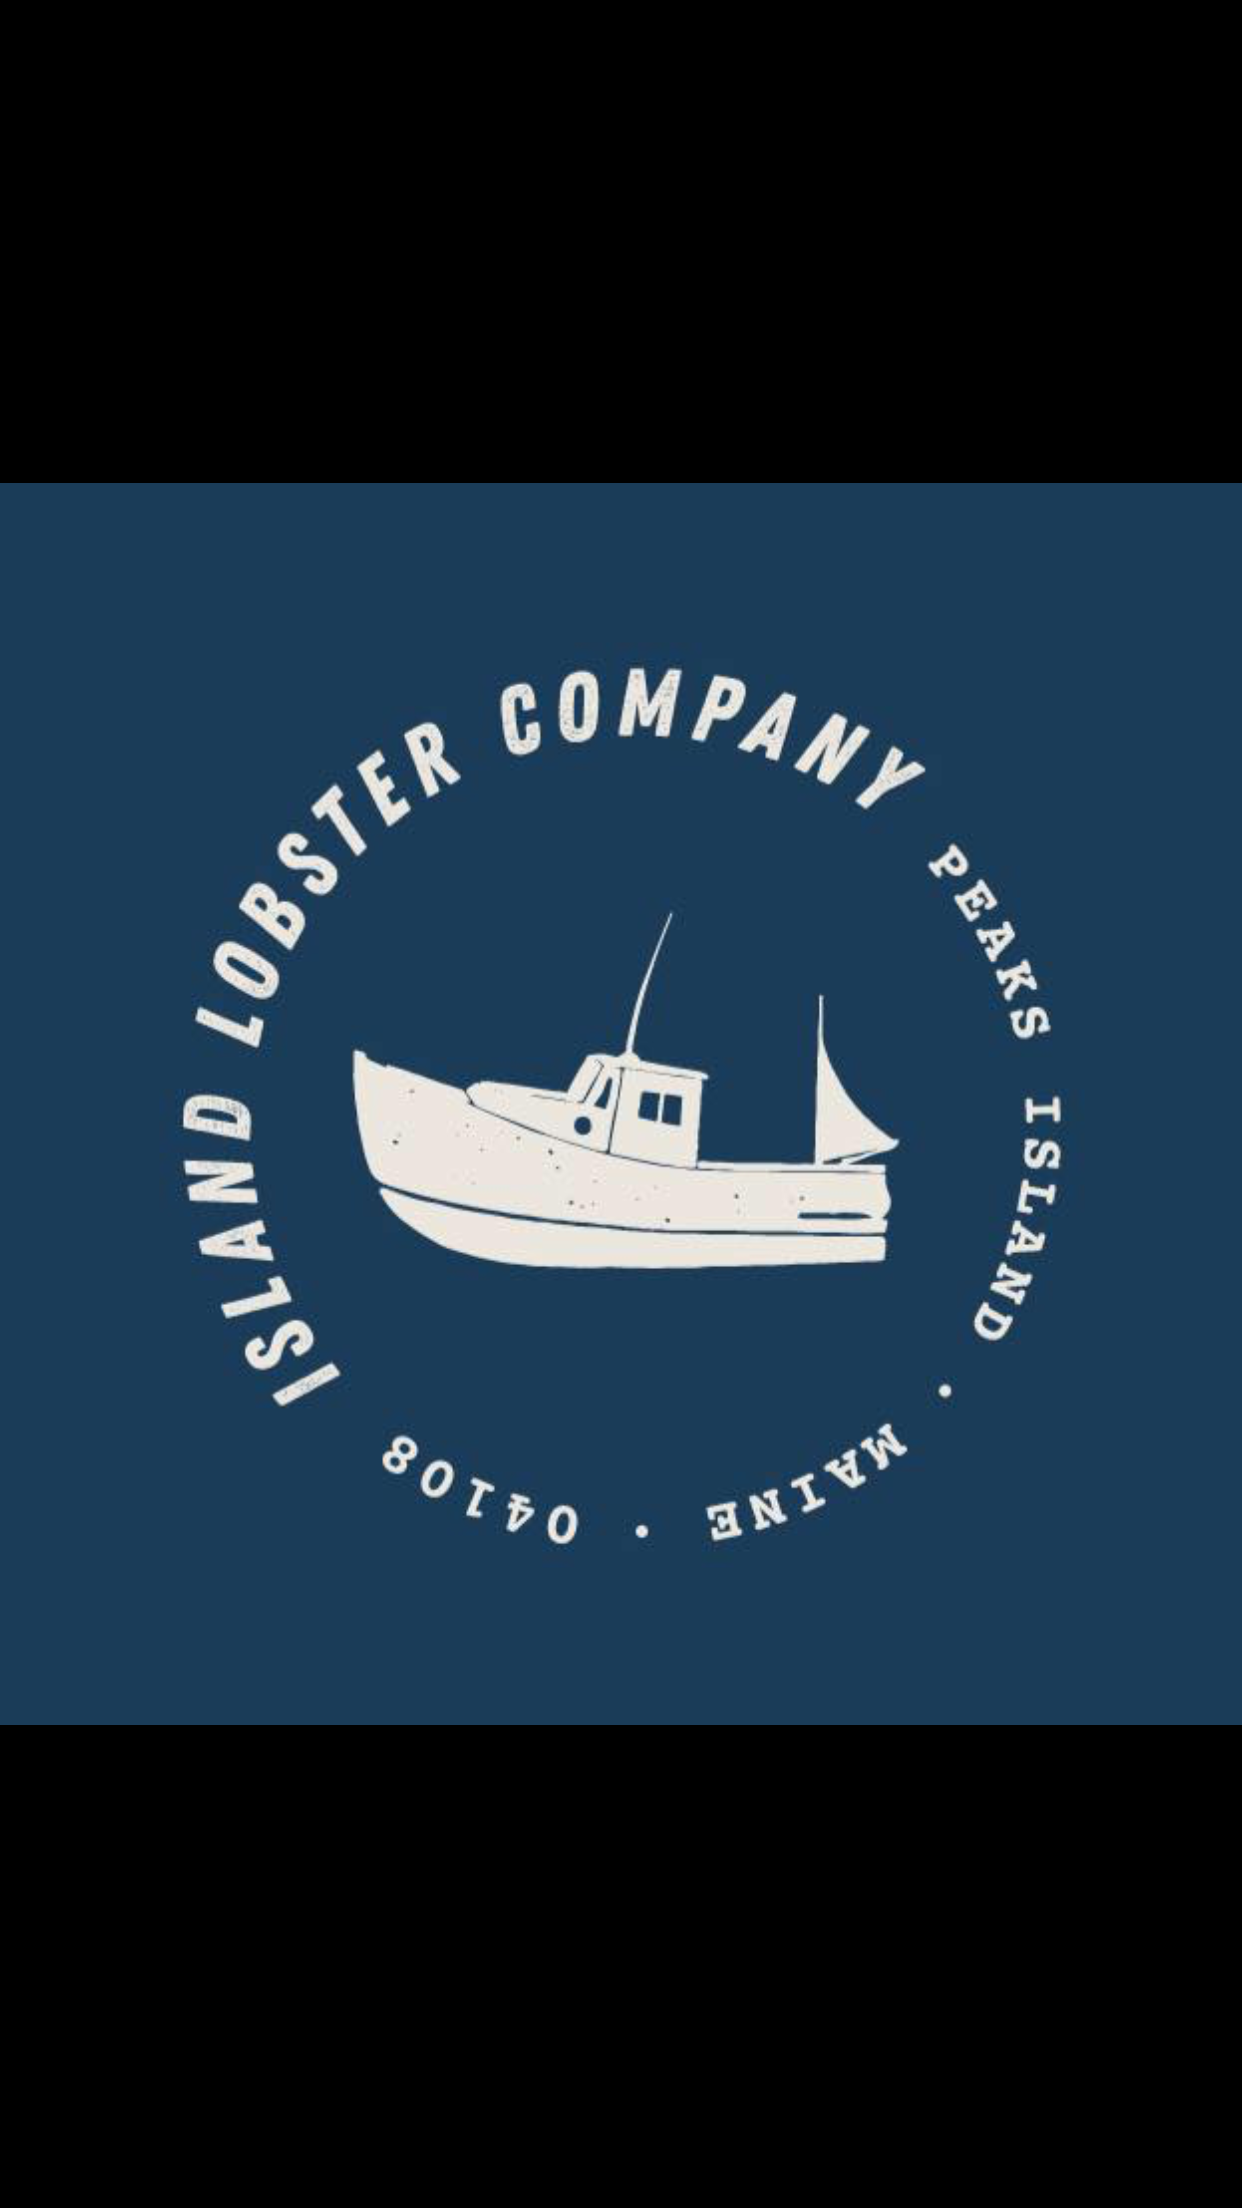 Island Lobster Company